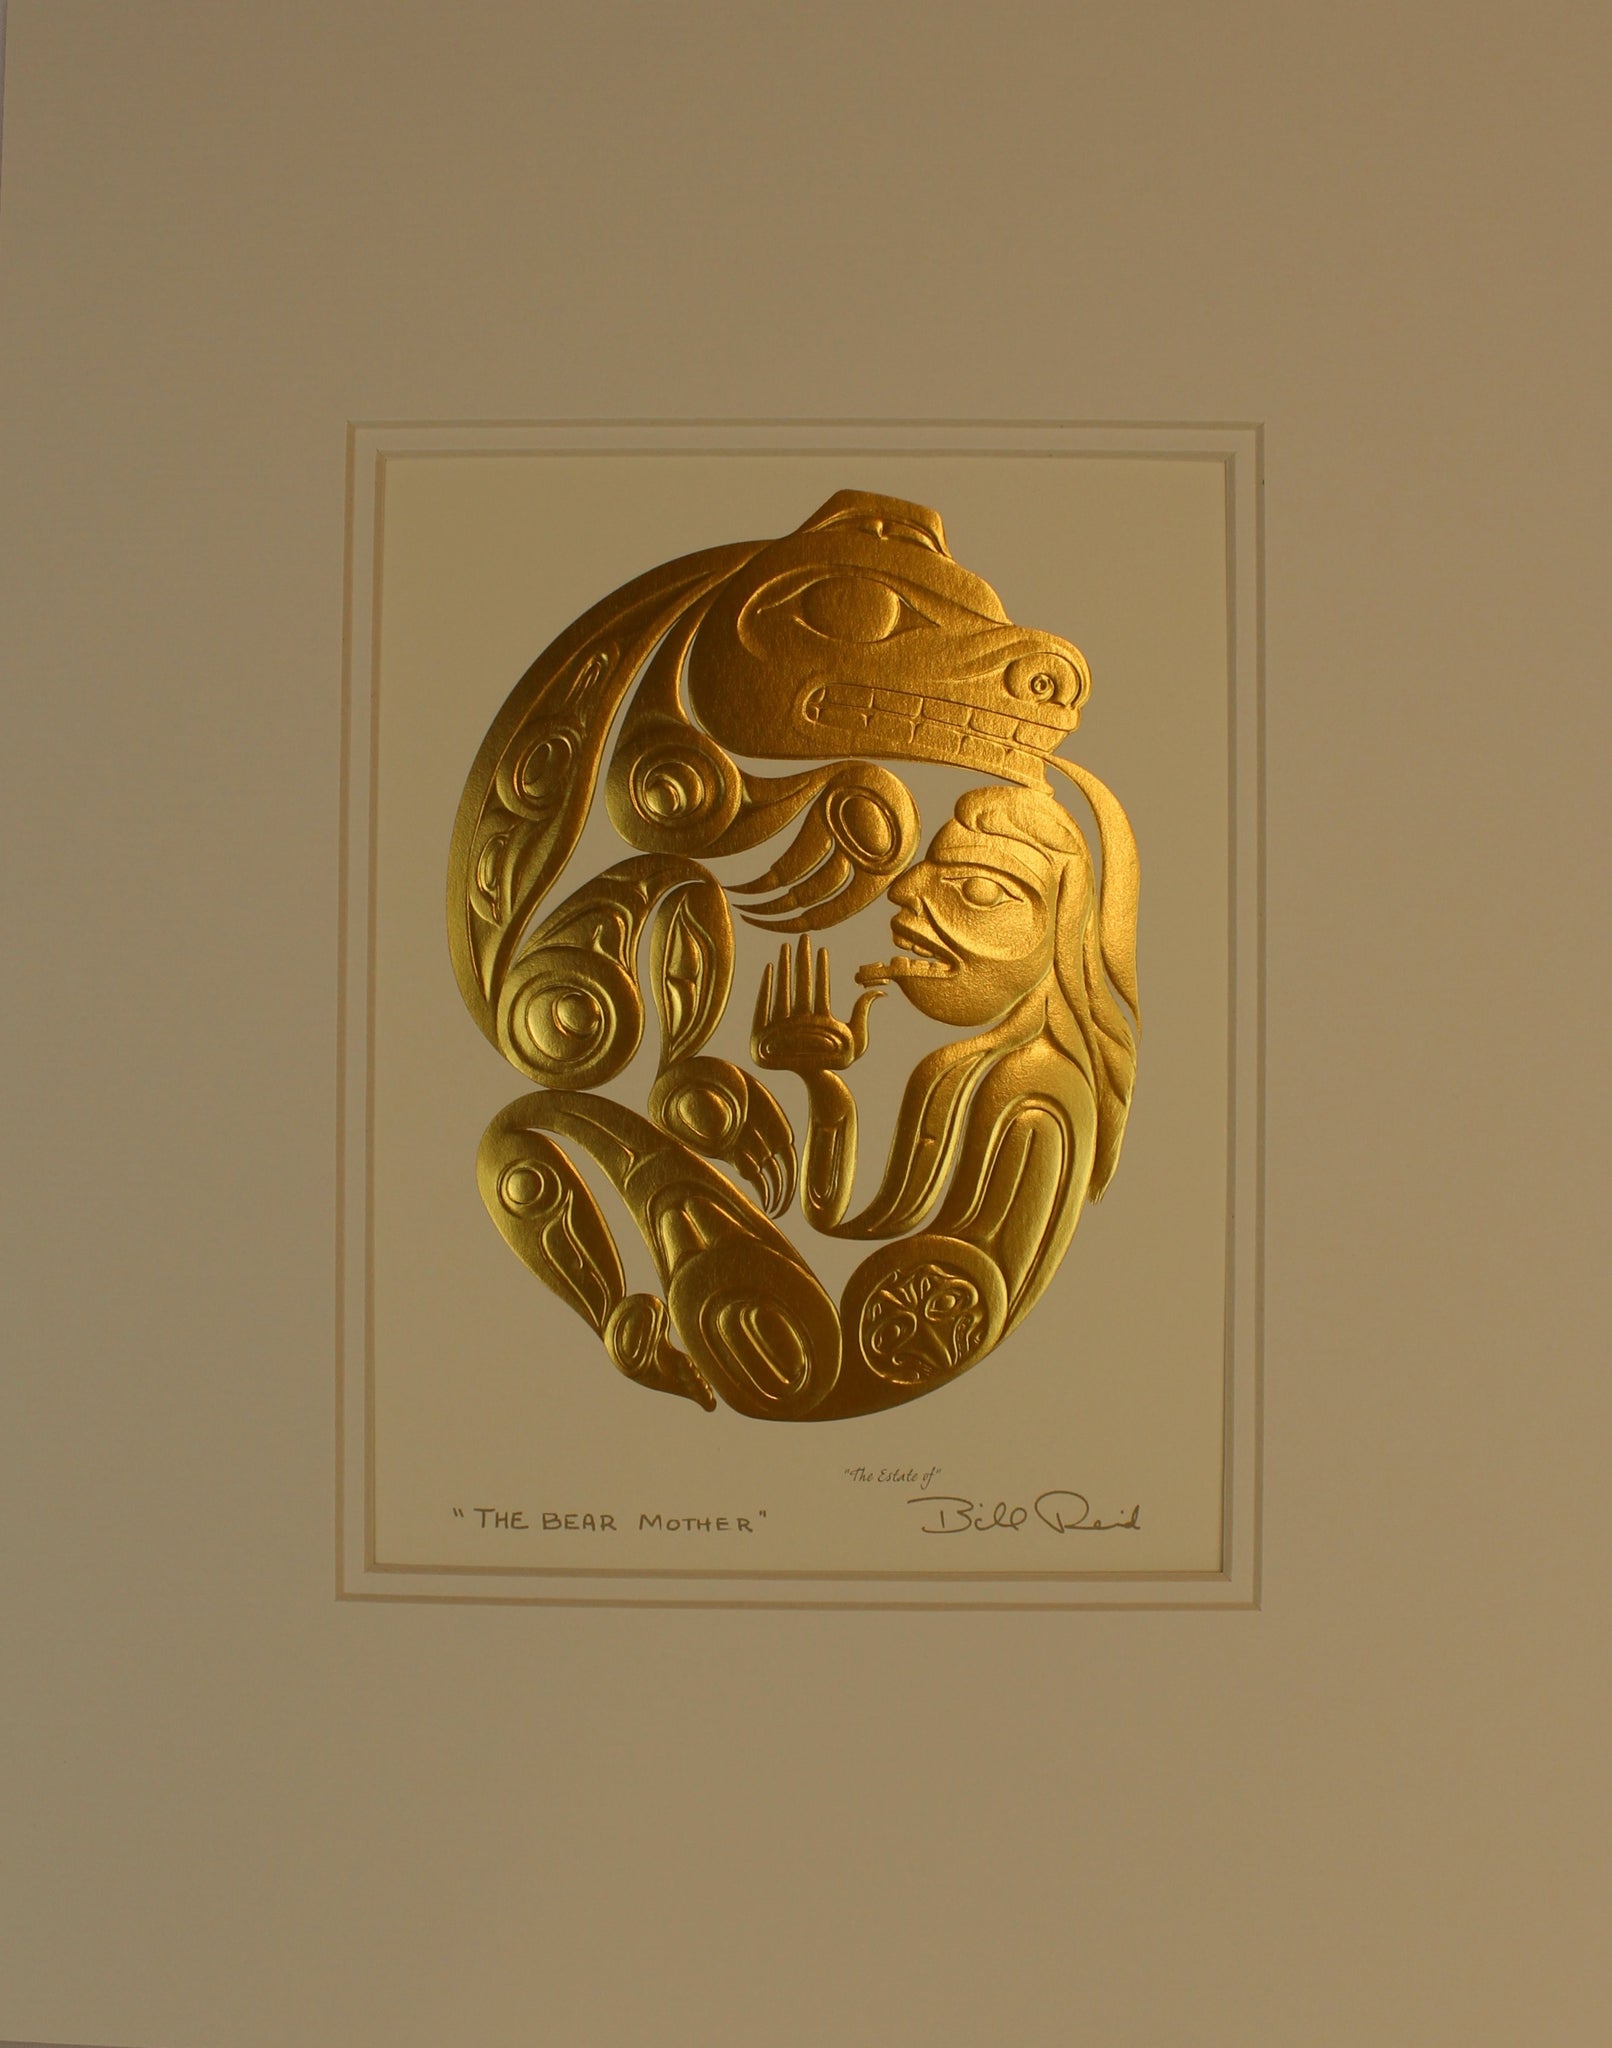 Bill Reid, Gold Series, Matted Art Cards